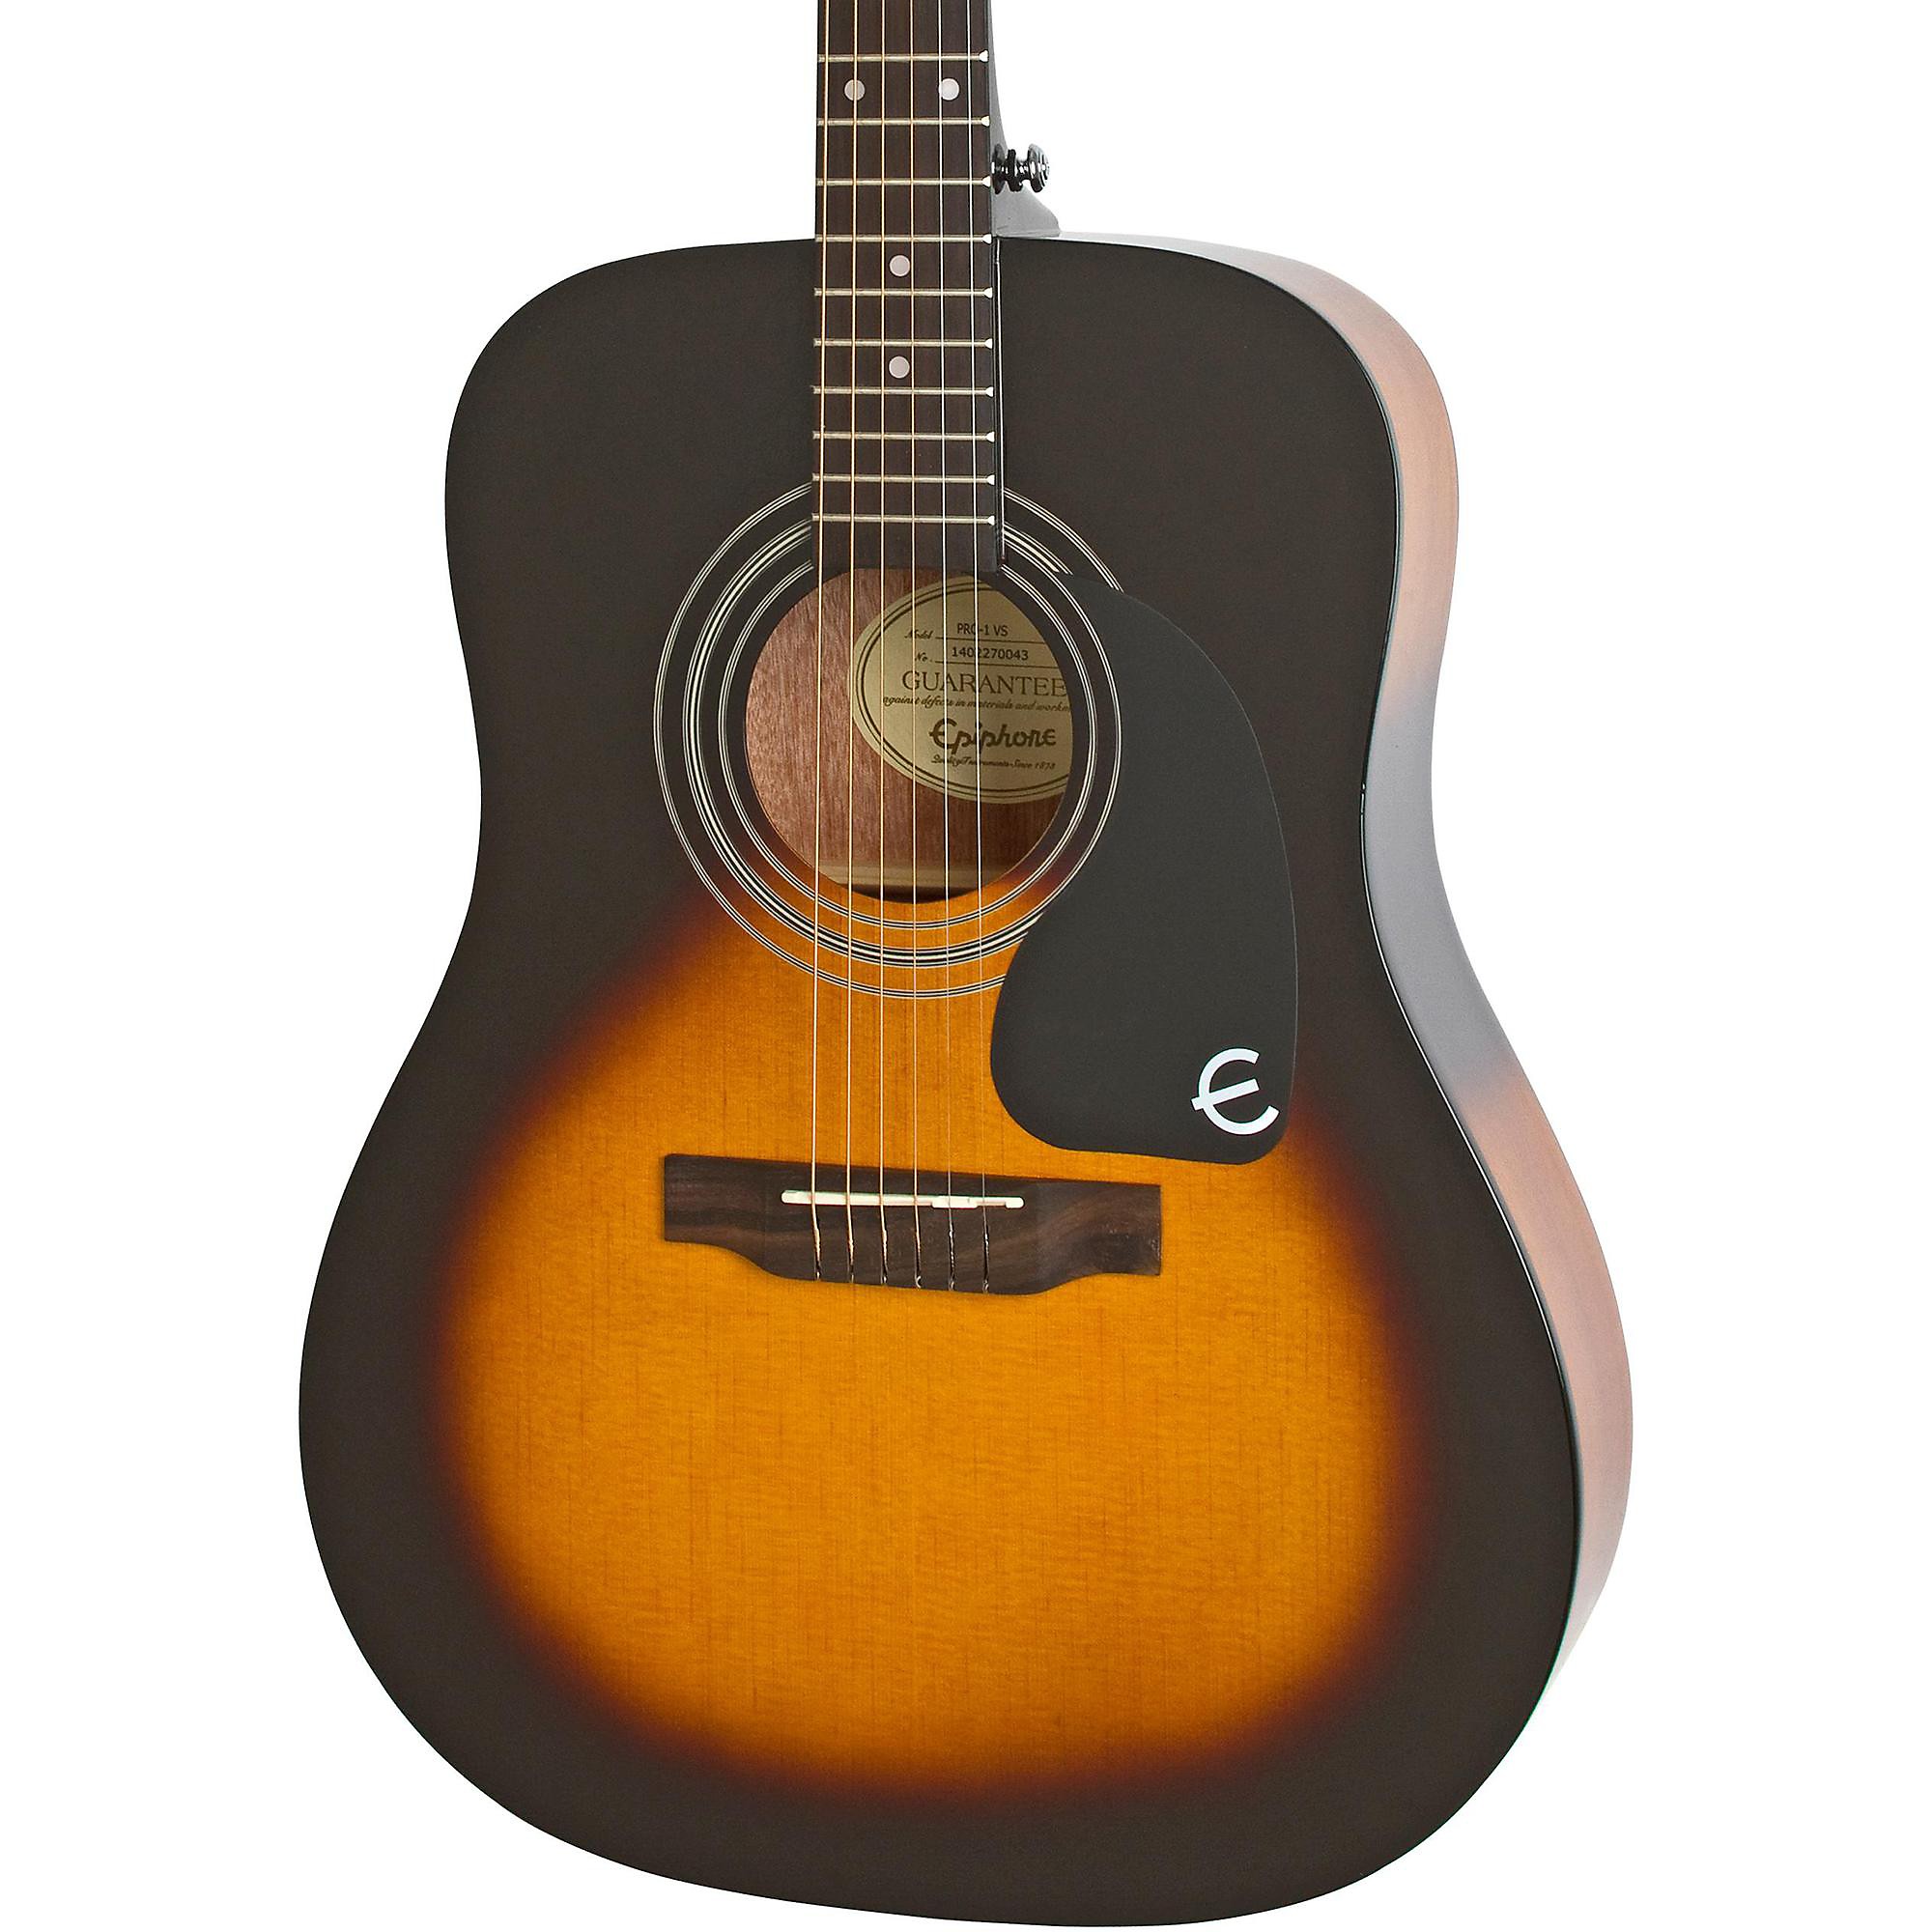 Акустическая гитара Epiphone PRO-1 Vintage Sunburst акустическая гитара crafter hd 250 vs vintage sunburst